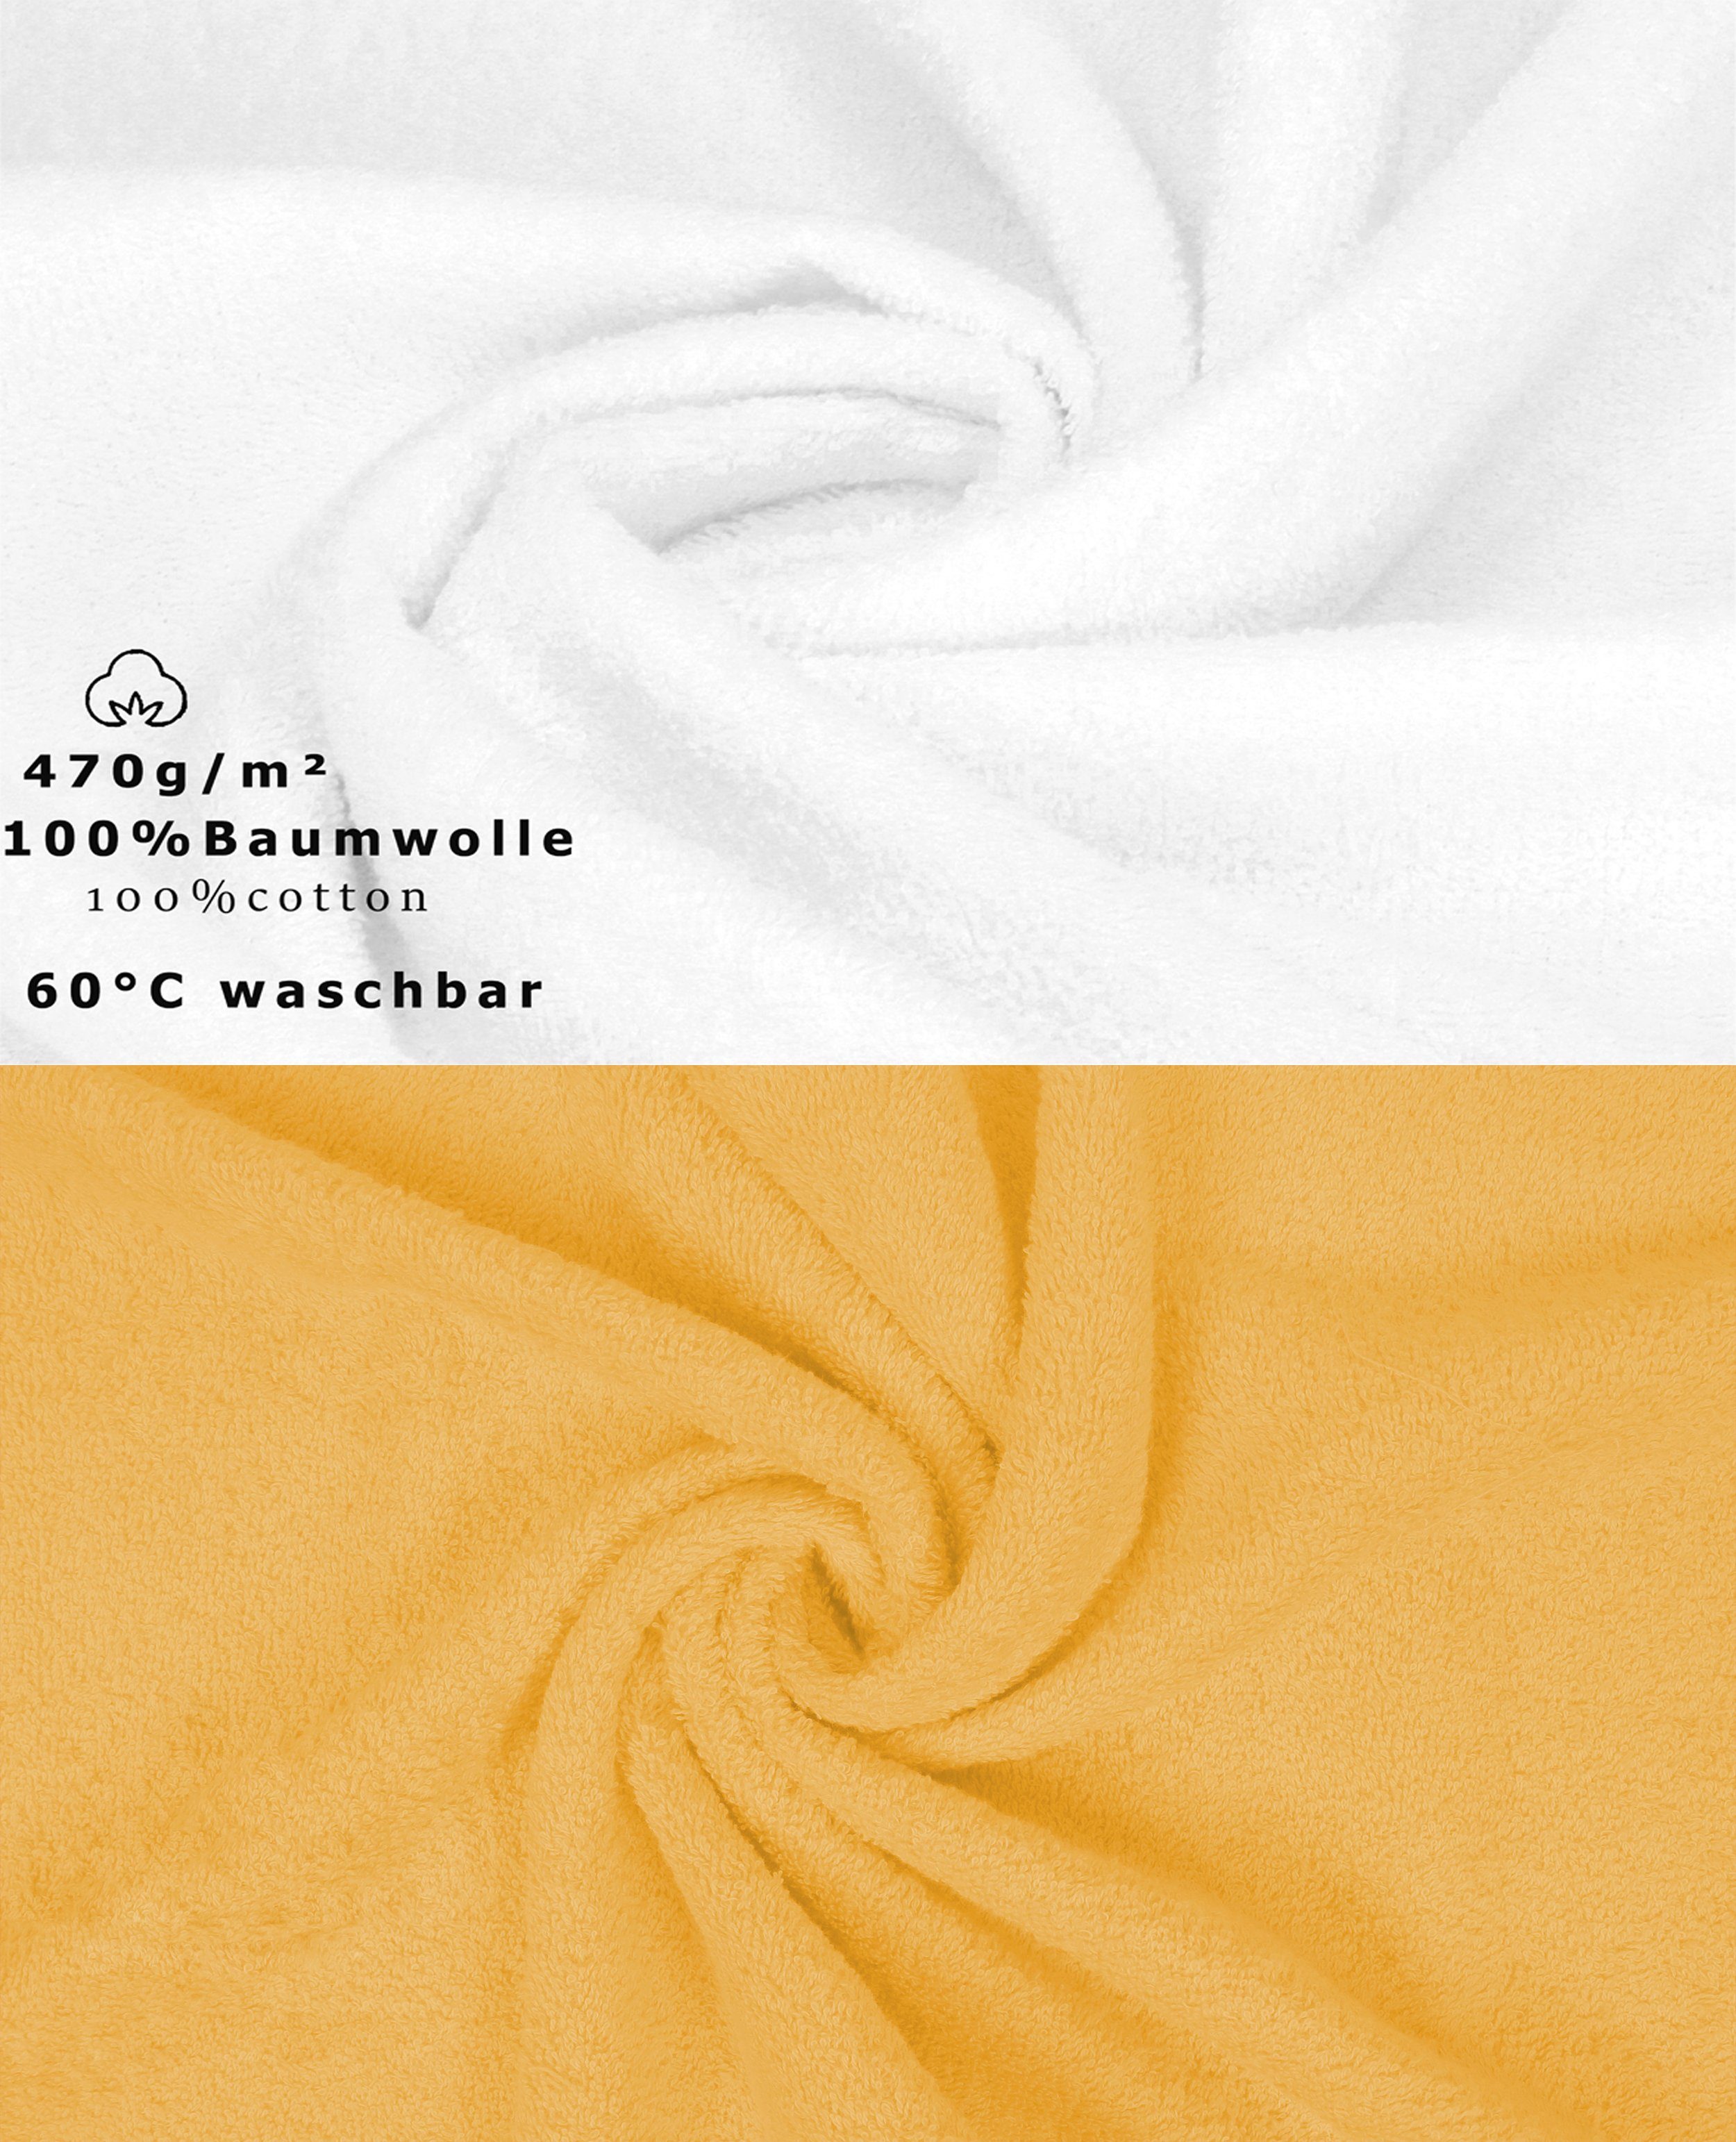 12-TLG. (12-tlg) Set Baumwolle, 100% Handtuch Handtuch Farbe weiß/honiggelb, Premium Betz Set